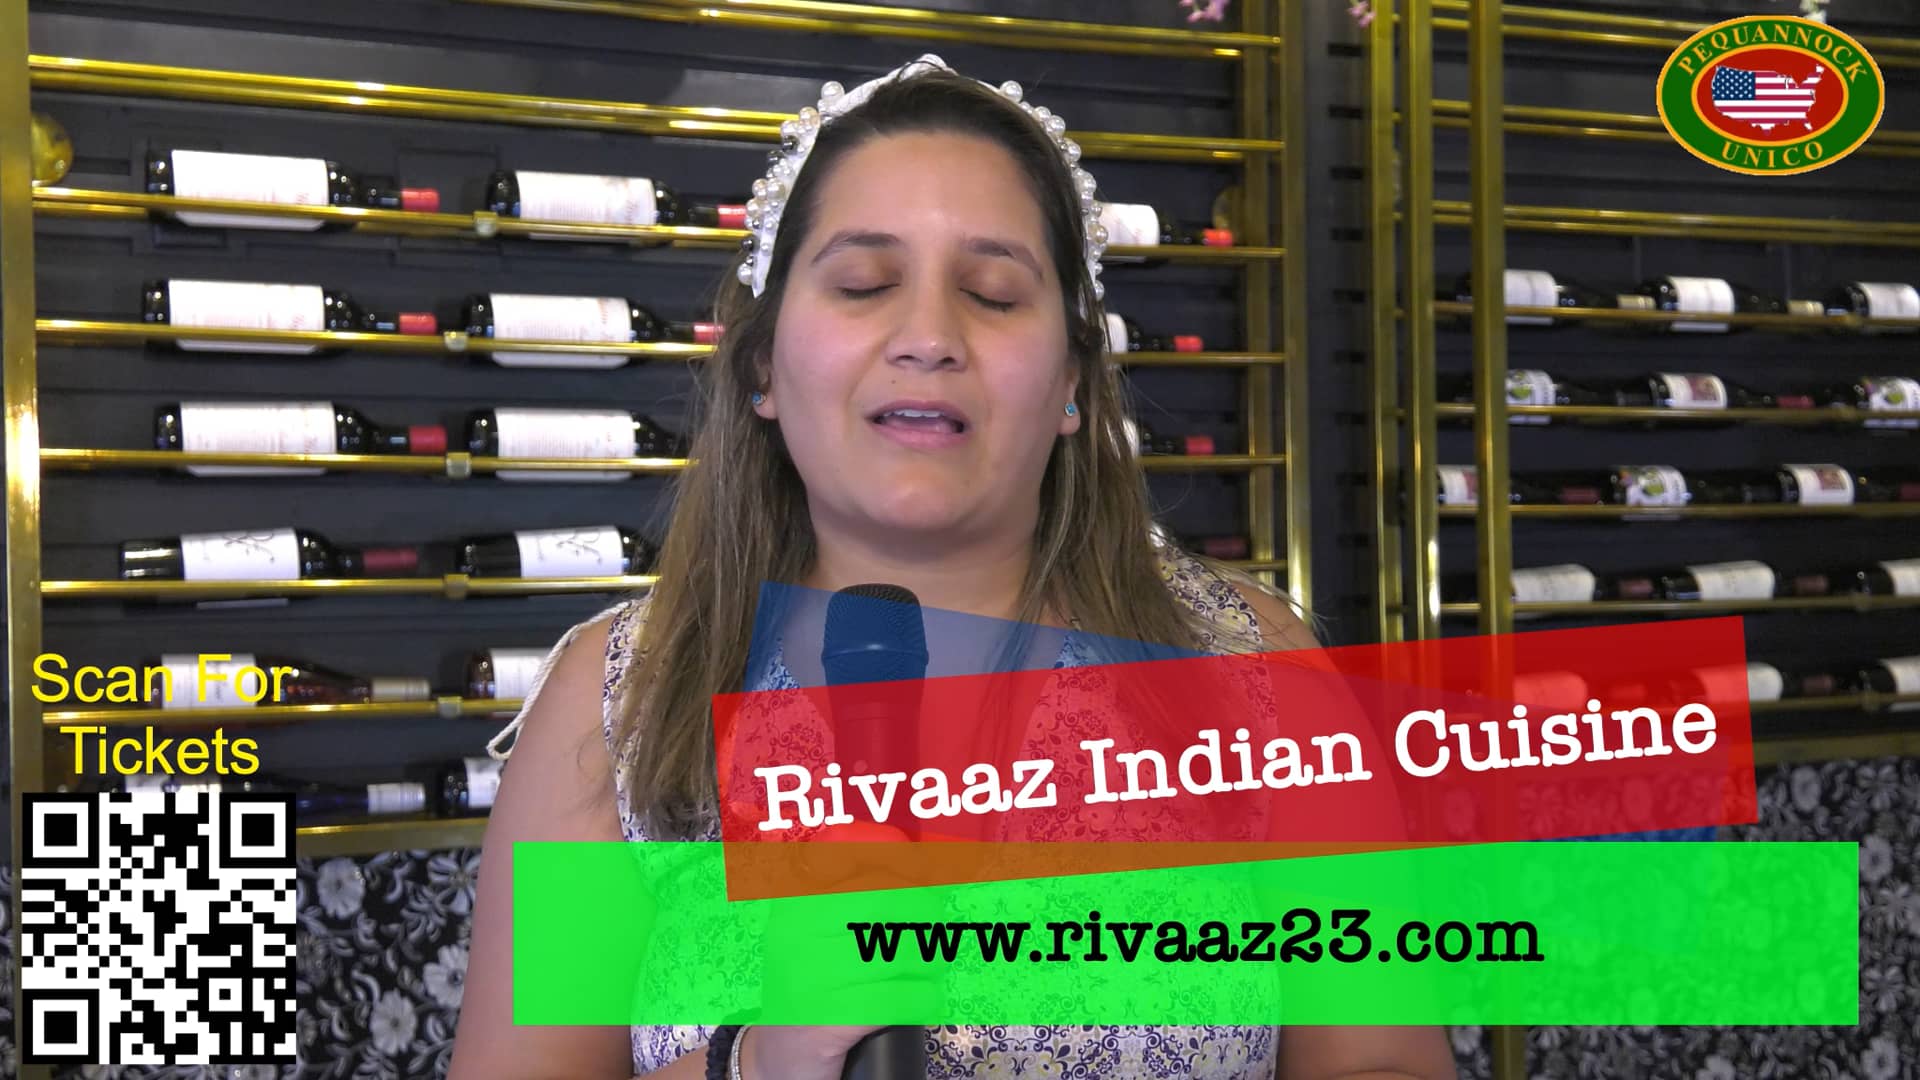 Rivaaz Indian Cuisine on Vimeo